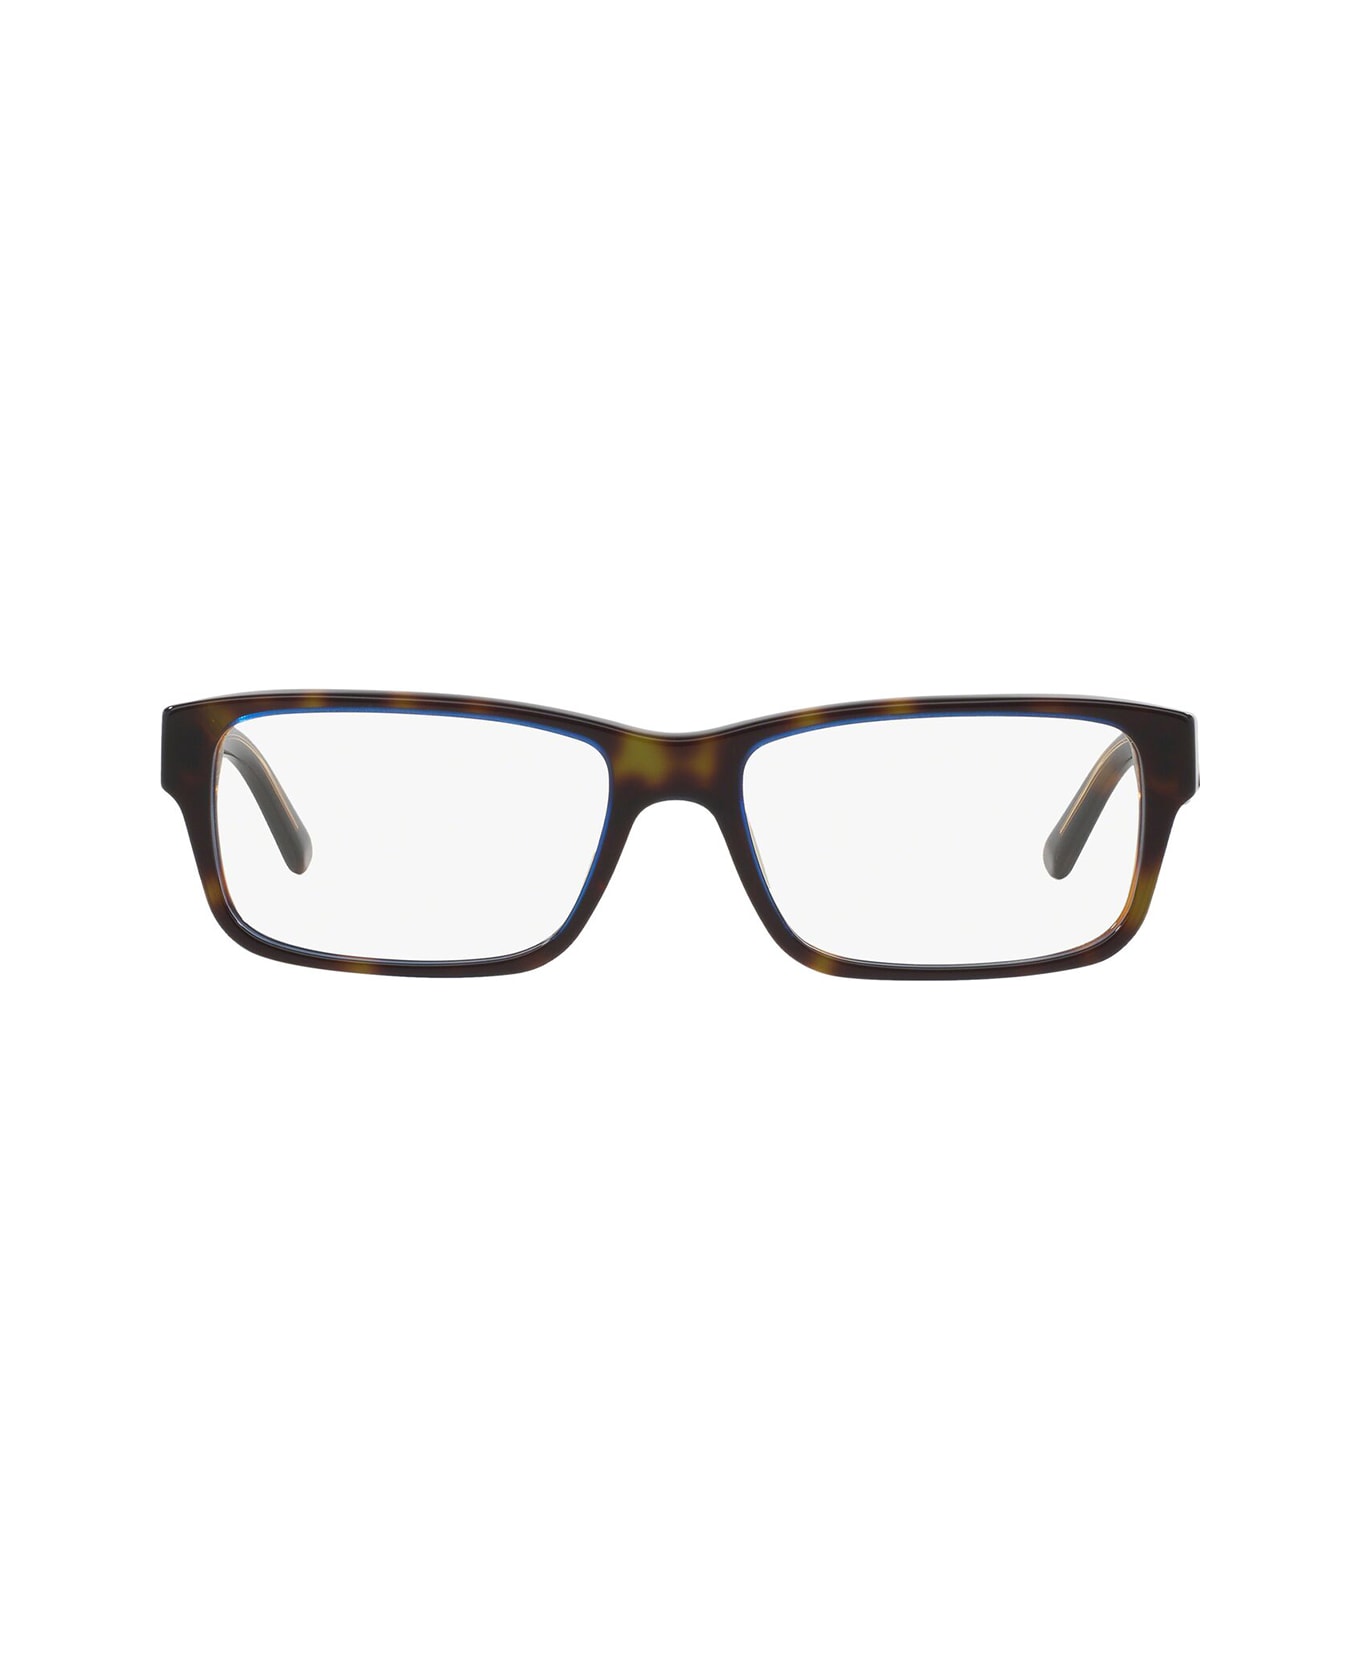 Prada Eyewear Pr 16mv Tortoise Denim Glasses - Tortoise Denim